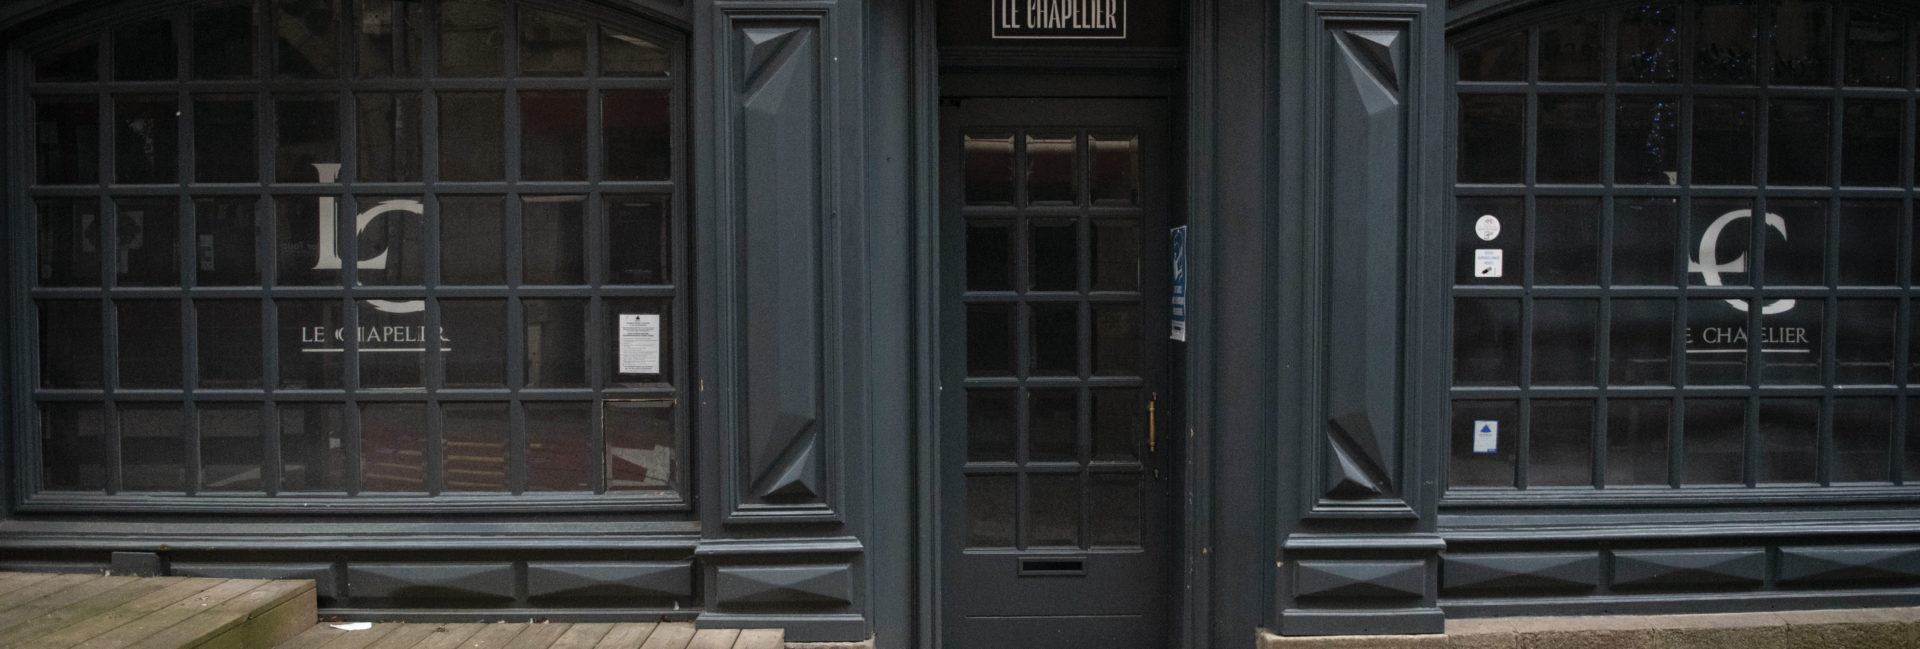 La façade du bar le Chapelier, fermé depuis le 28 octobre 2020